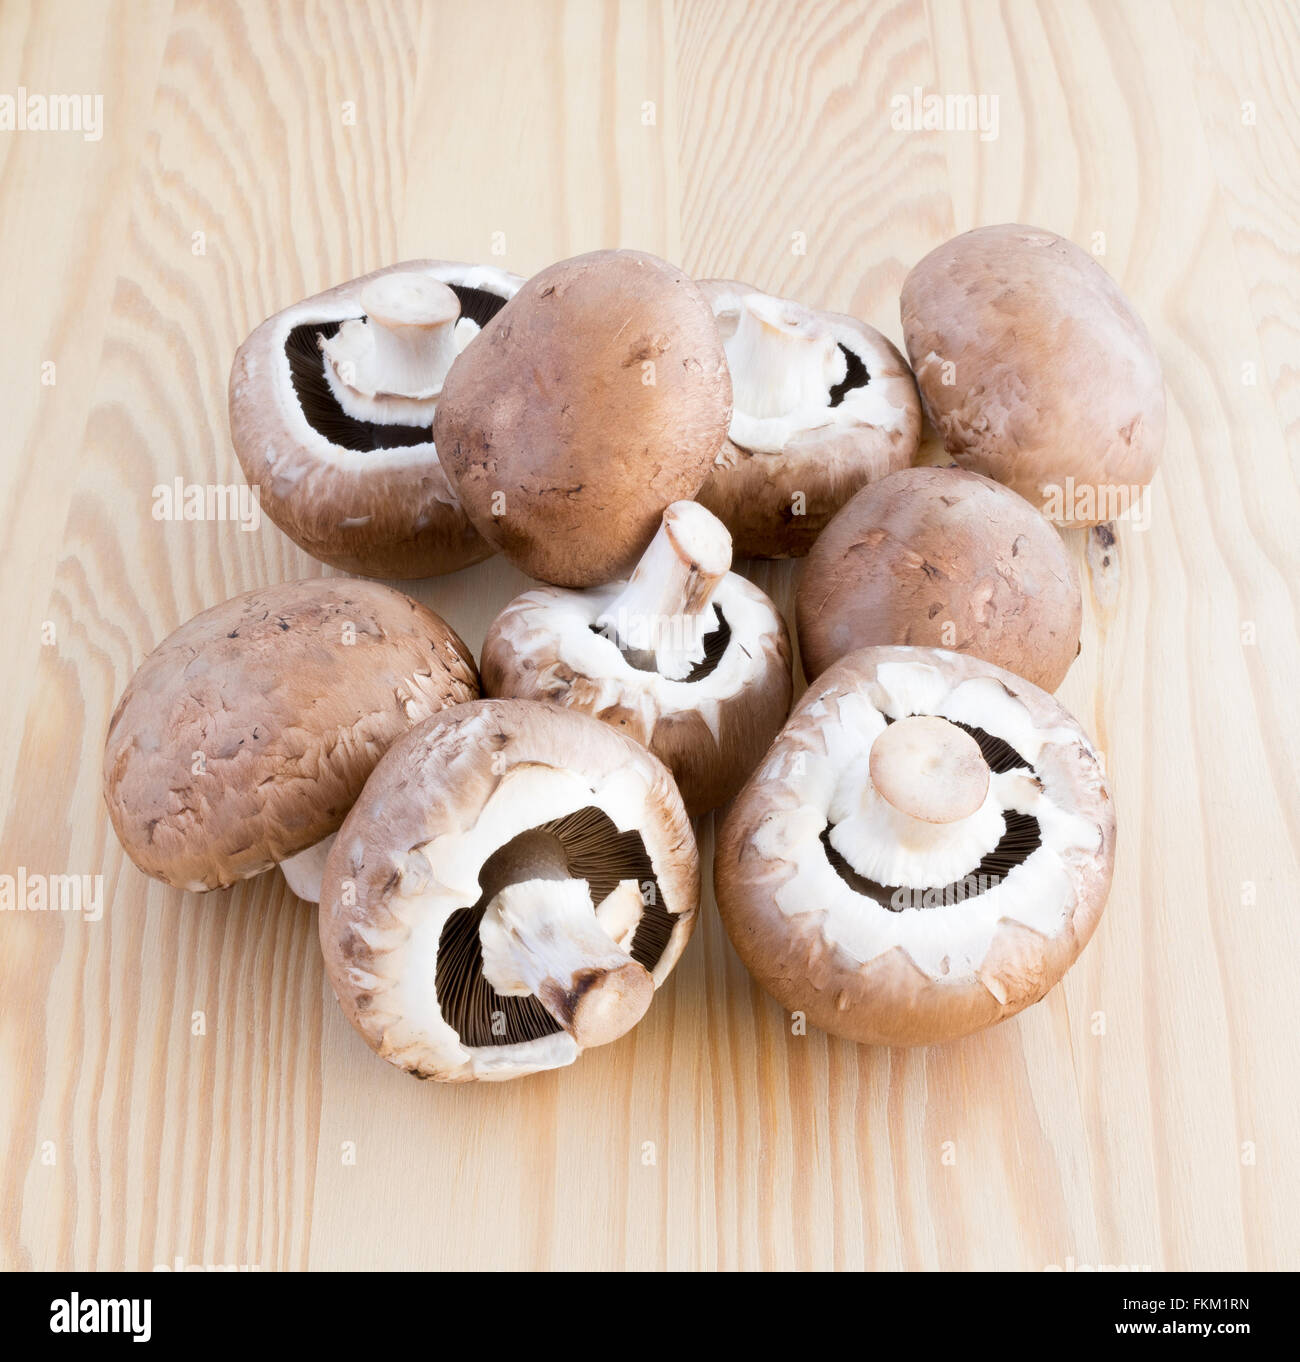 Viele Maronen Pilze auf einem Holzbrett Stockfoto